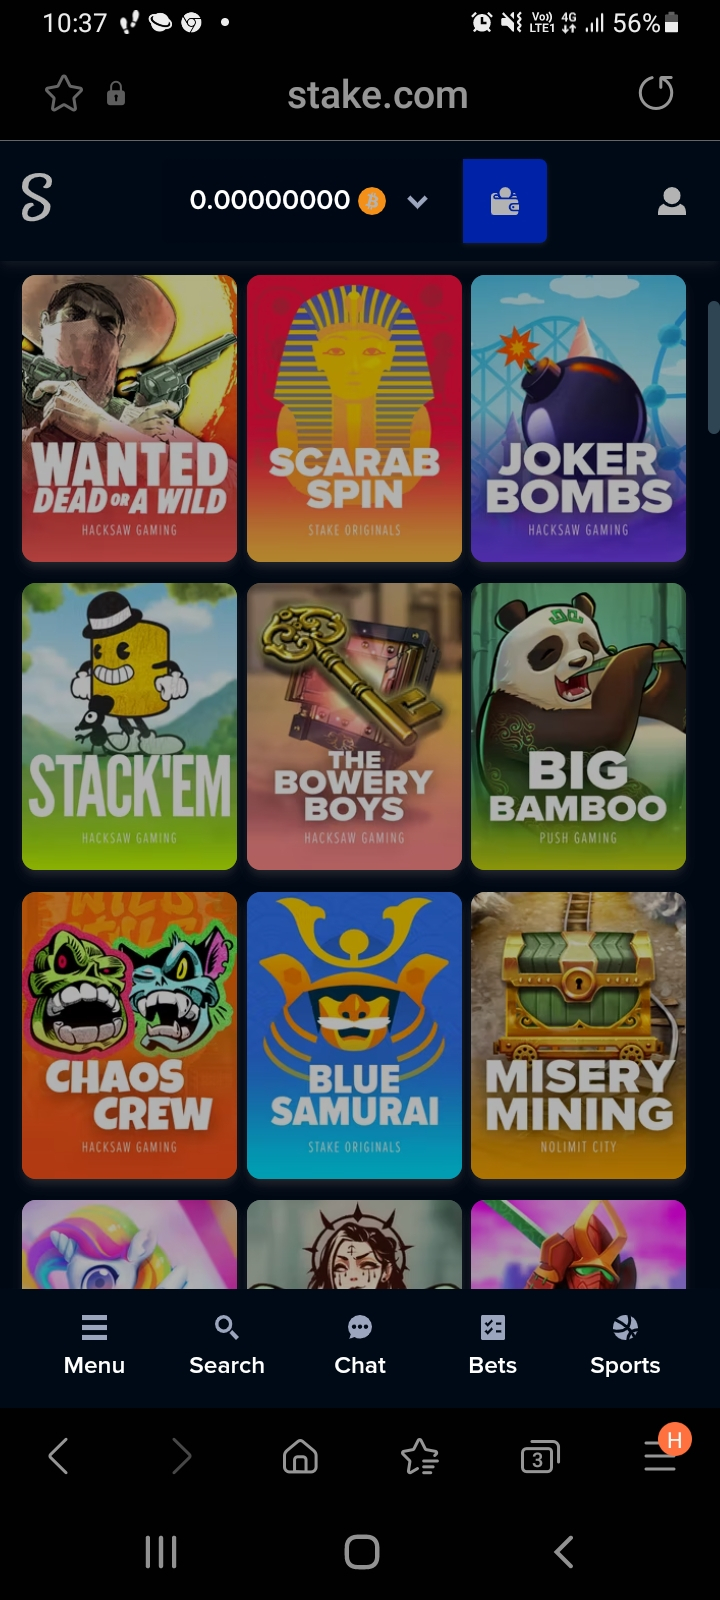 Stake.com casino app screenshot 1